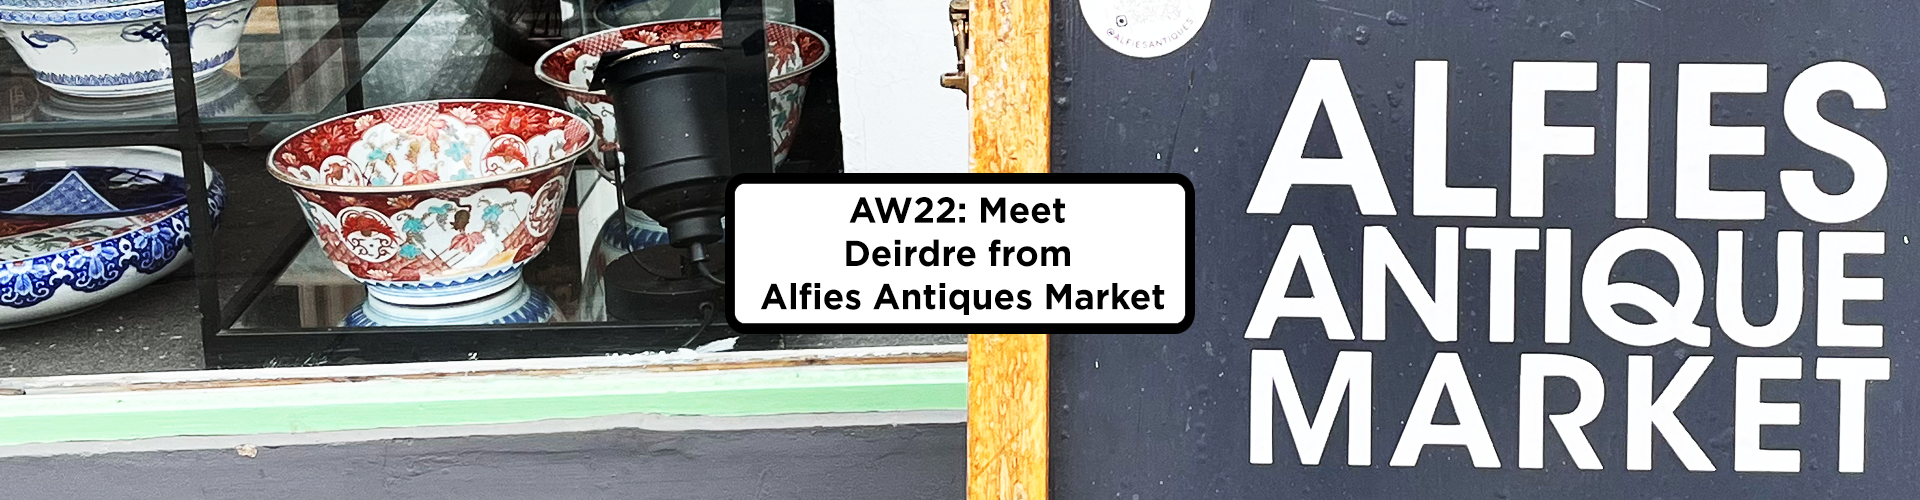 AW22: Meet Deirdre from Alfies Antiques Market